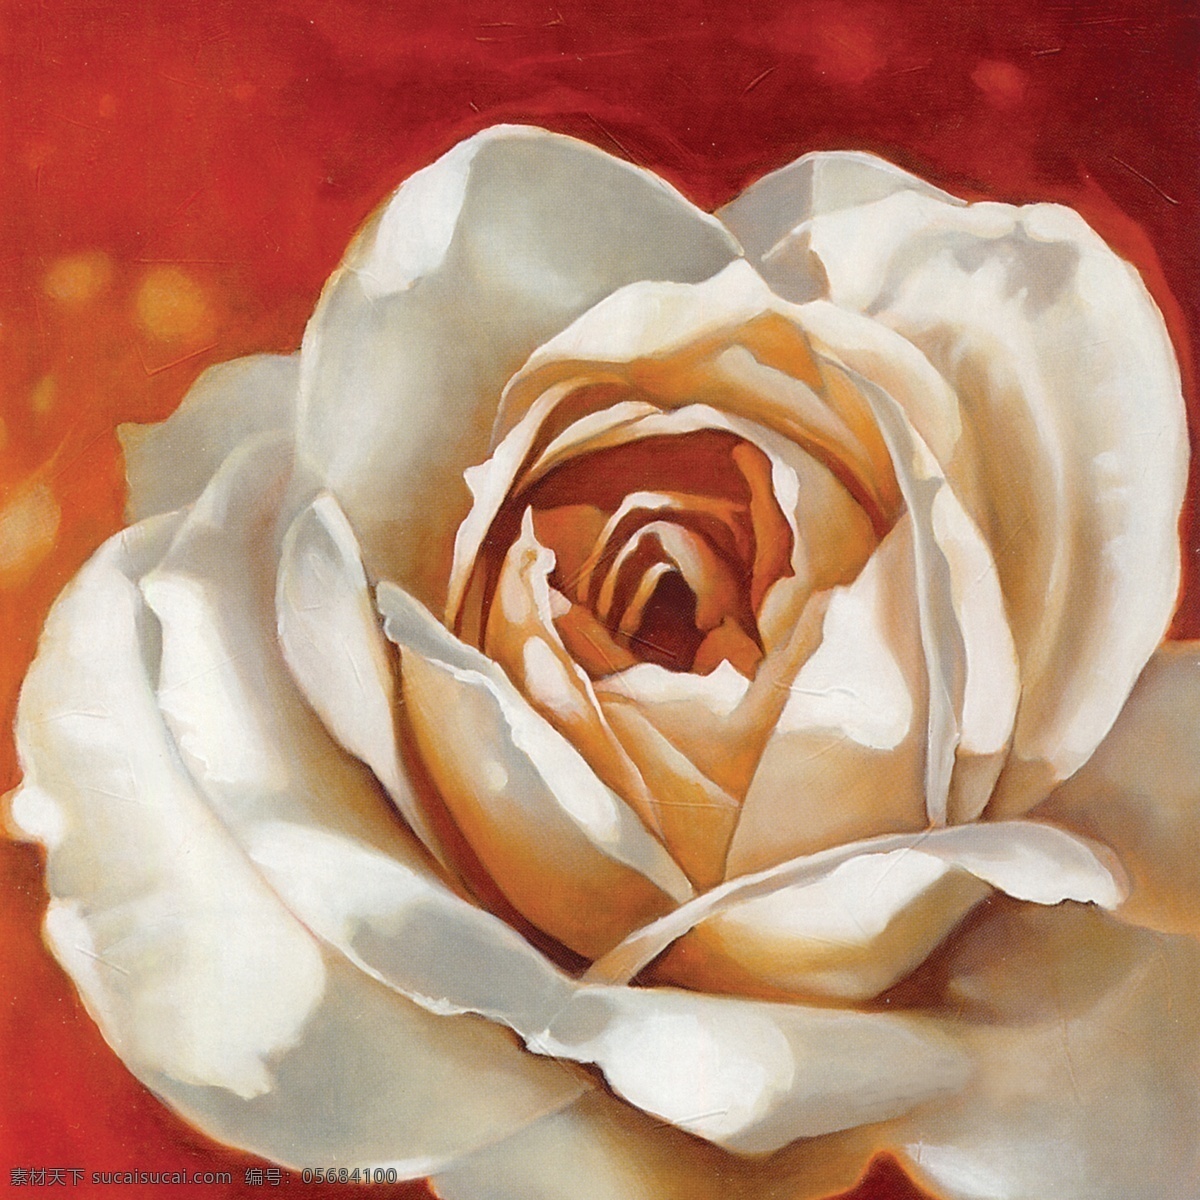 花卉 油画 50厘米 x 花 手绘 装饰画 无框画 扫描 大图 清晰 写真 喷绘 印刷 玫瑰 月季 牡丹 茶花 绘画书法 文化艺术